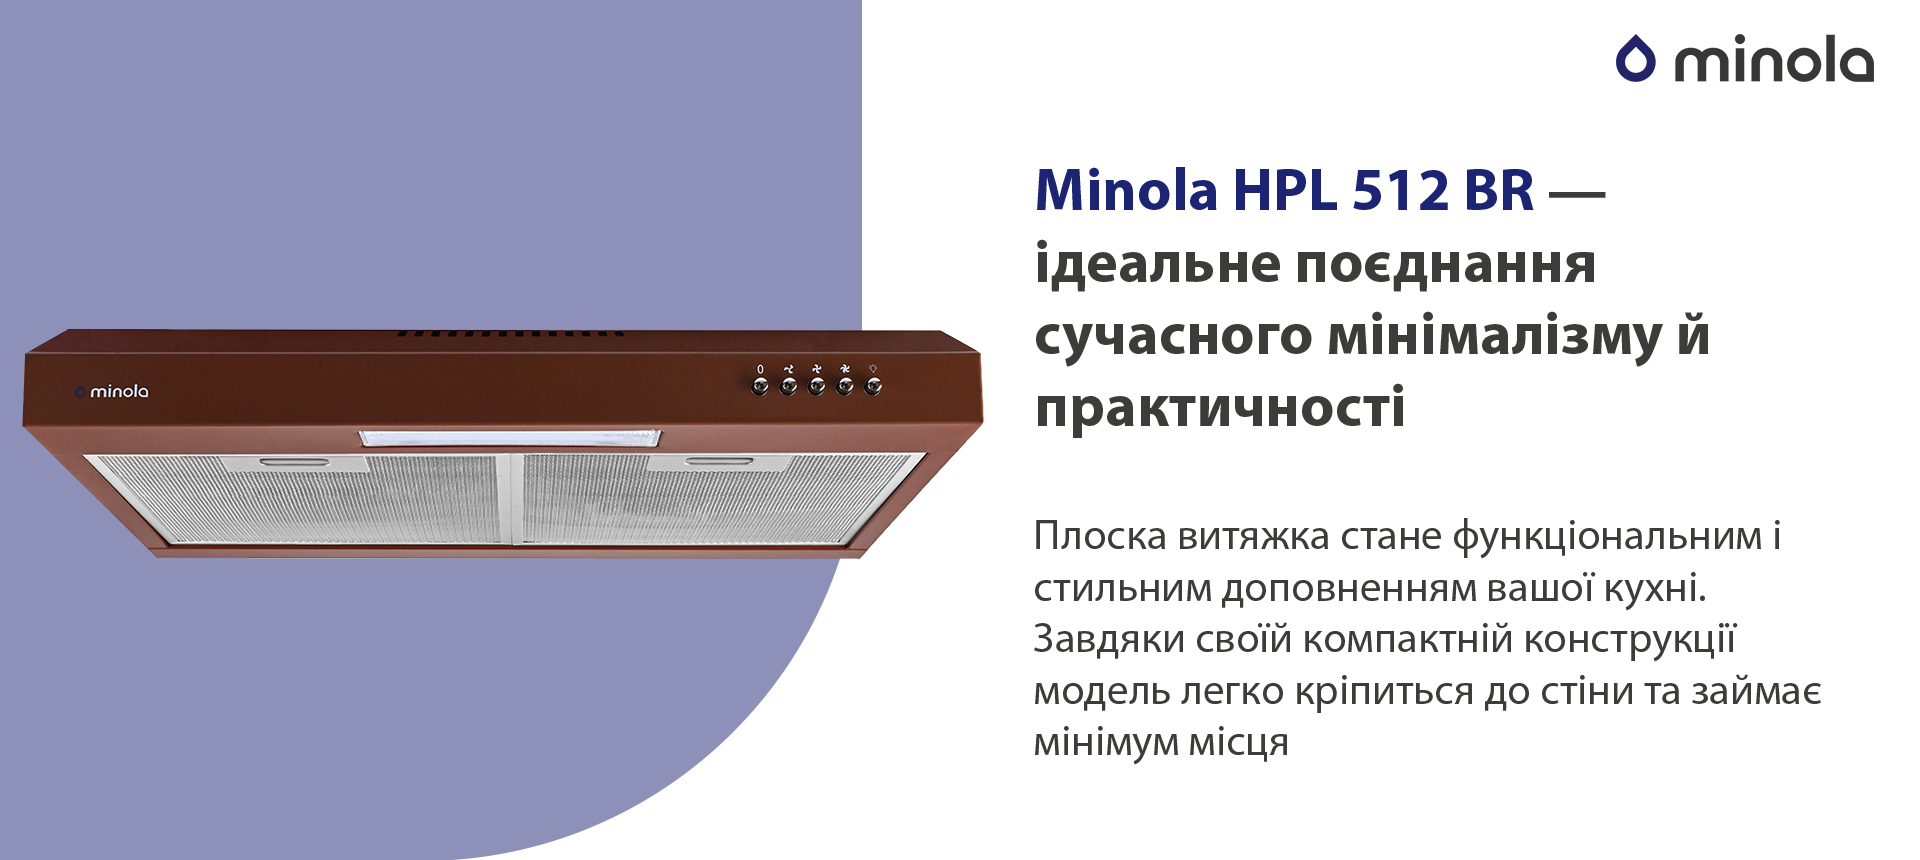 Витяжка кухонная плоская Minola HPL 512 BR обзор - фото 11